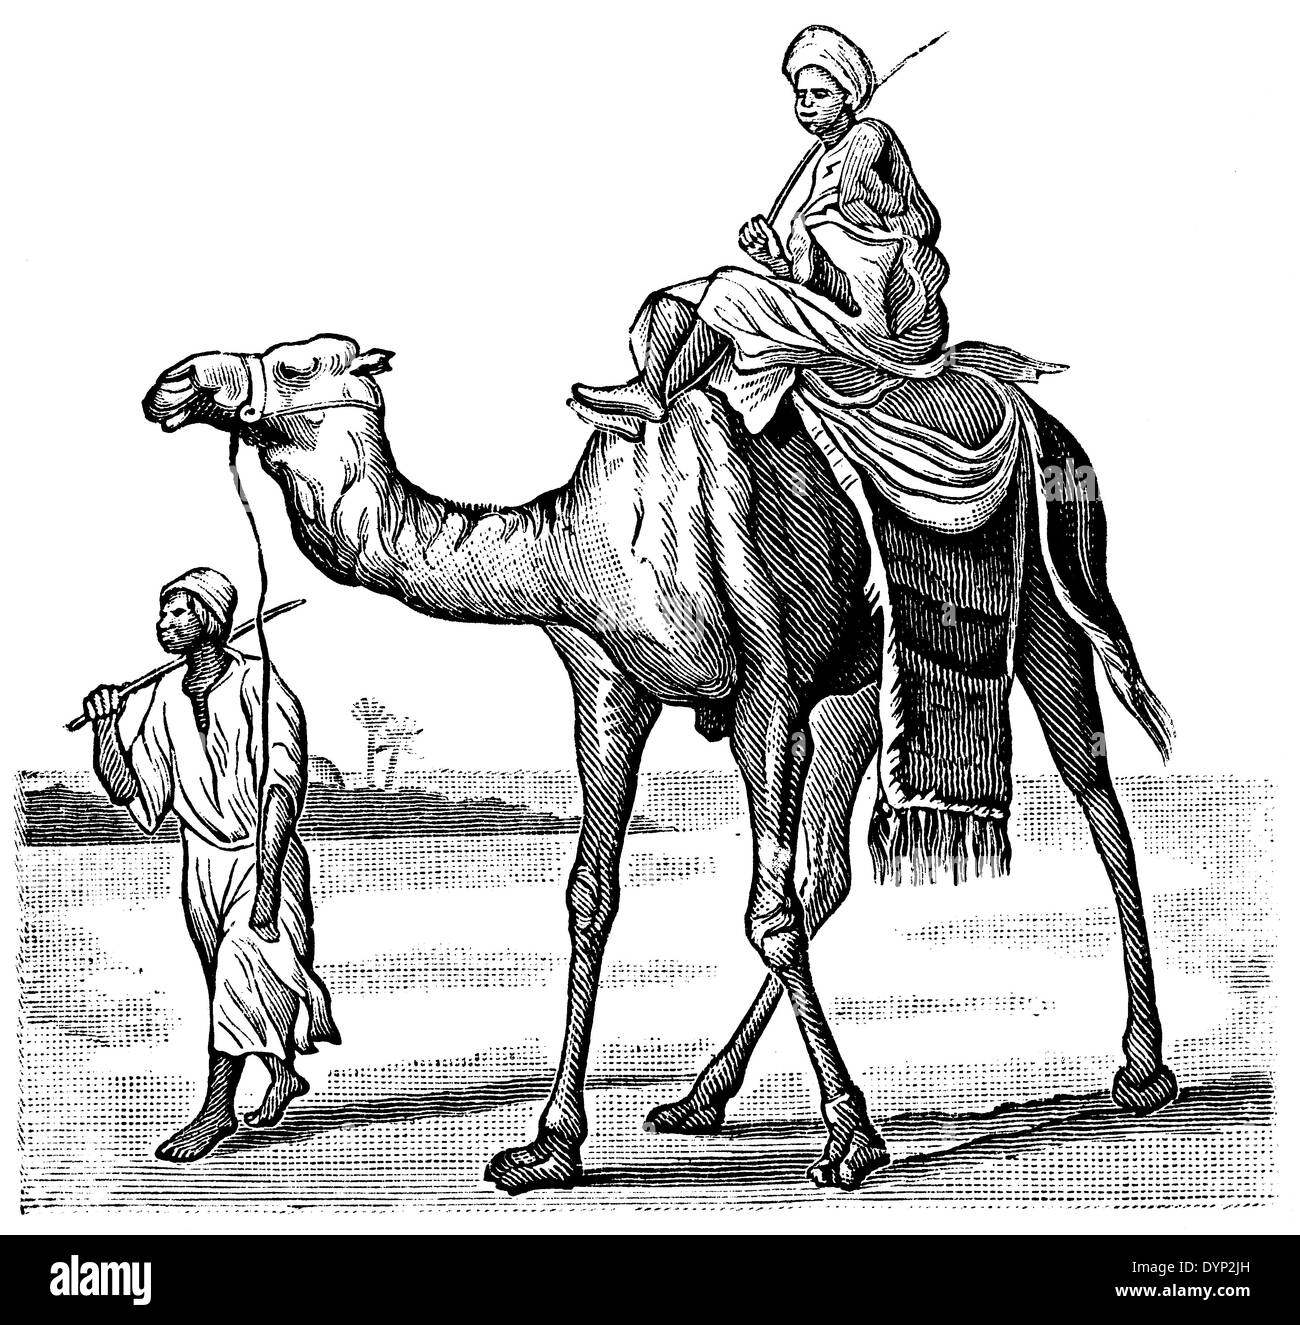 El montar a caballo del camello, el Norte de África, la ilustración de la Enciclopedia soviética, 1926 Foto de stock